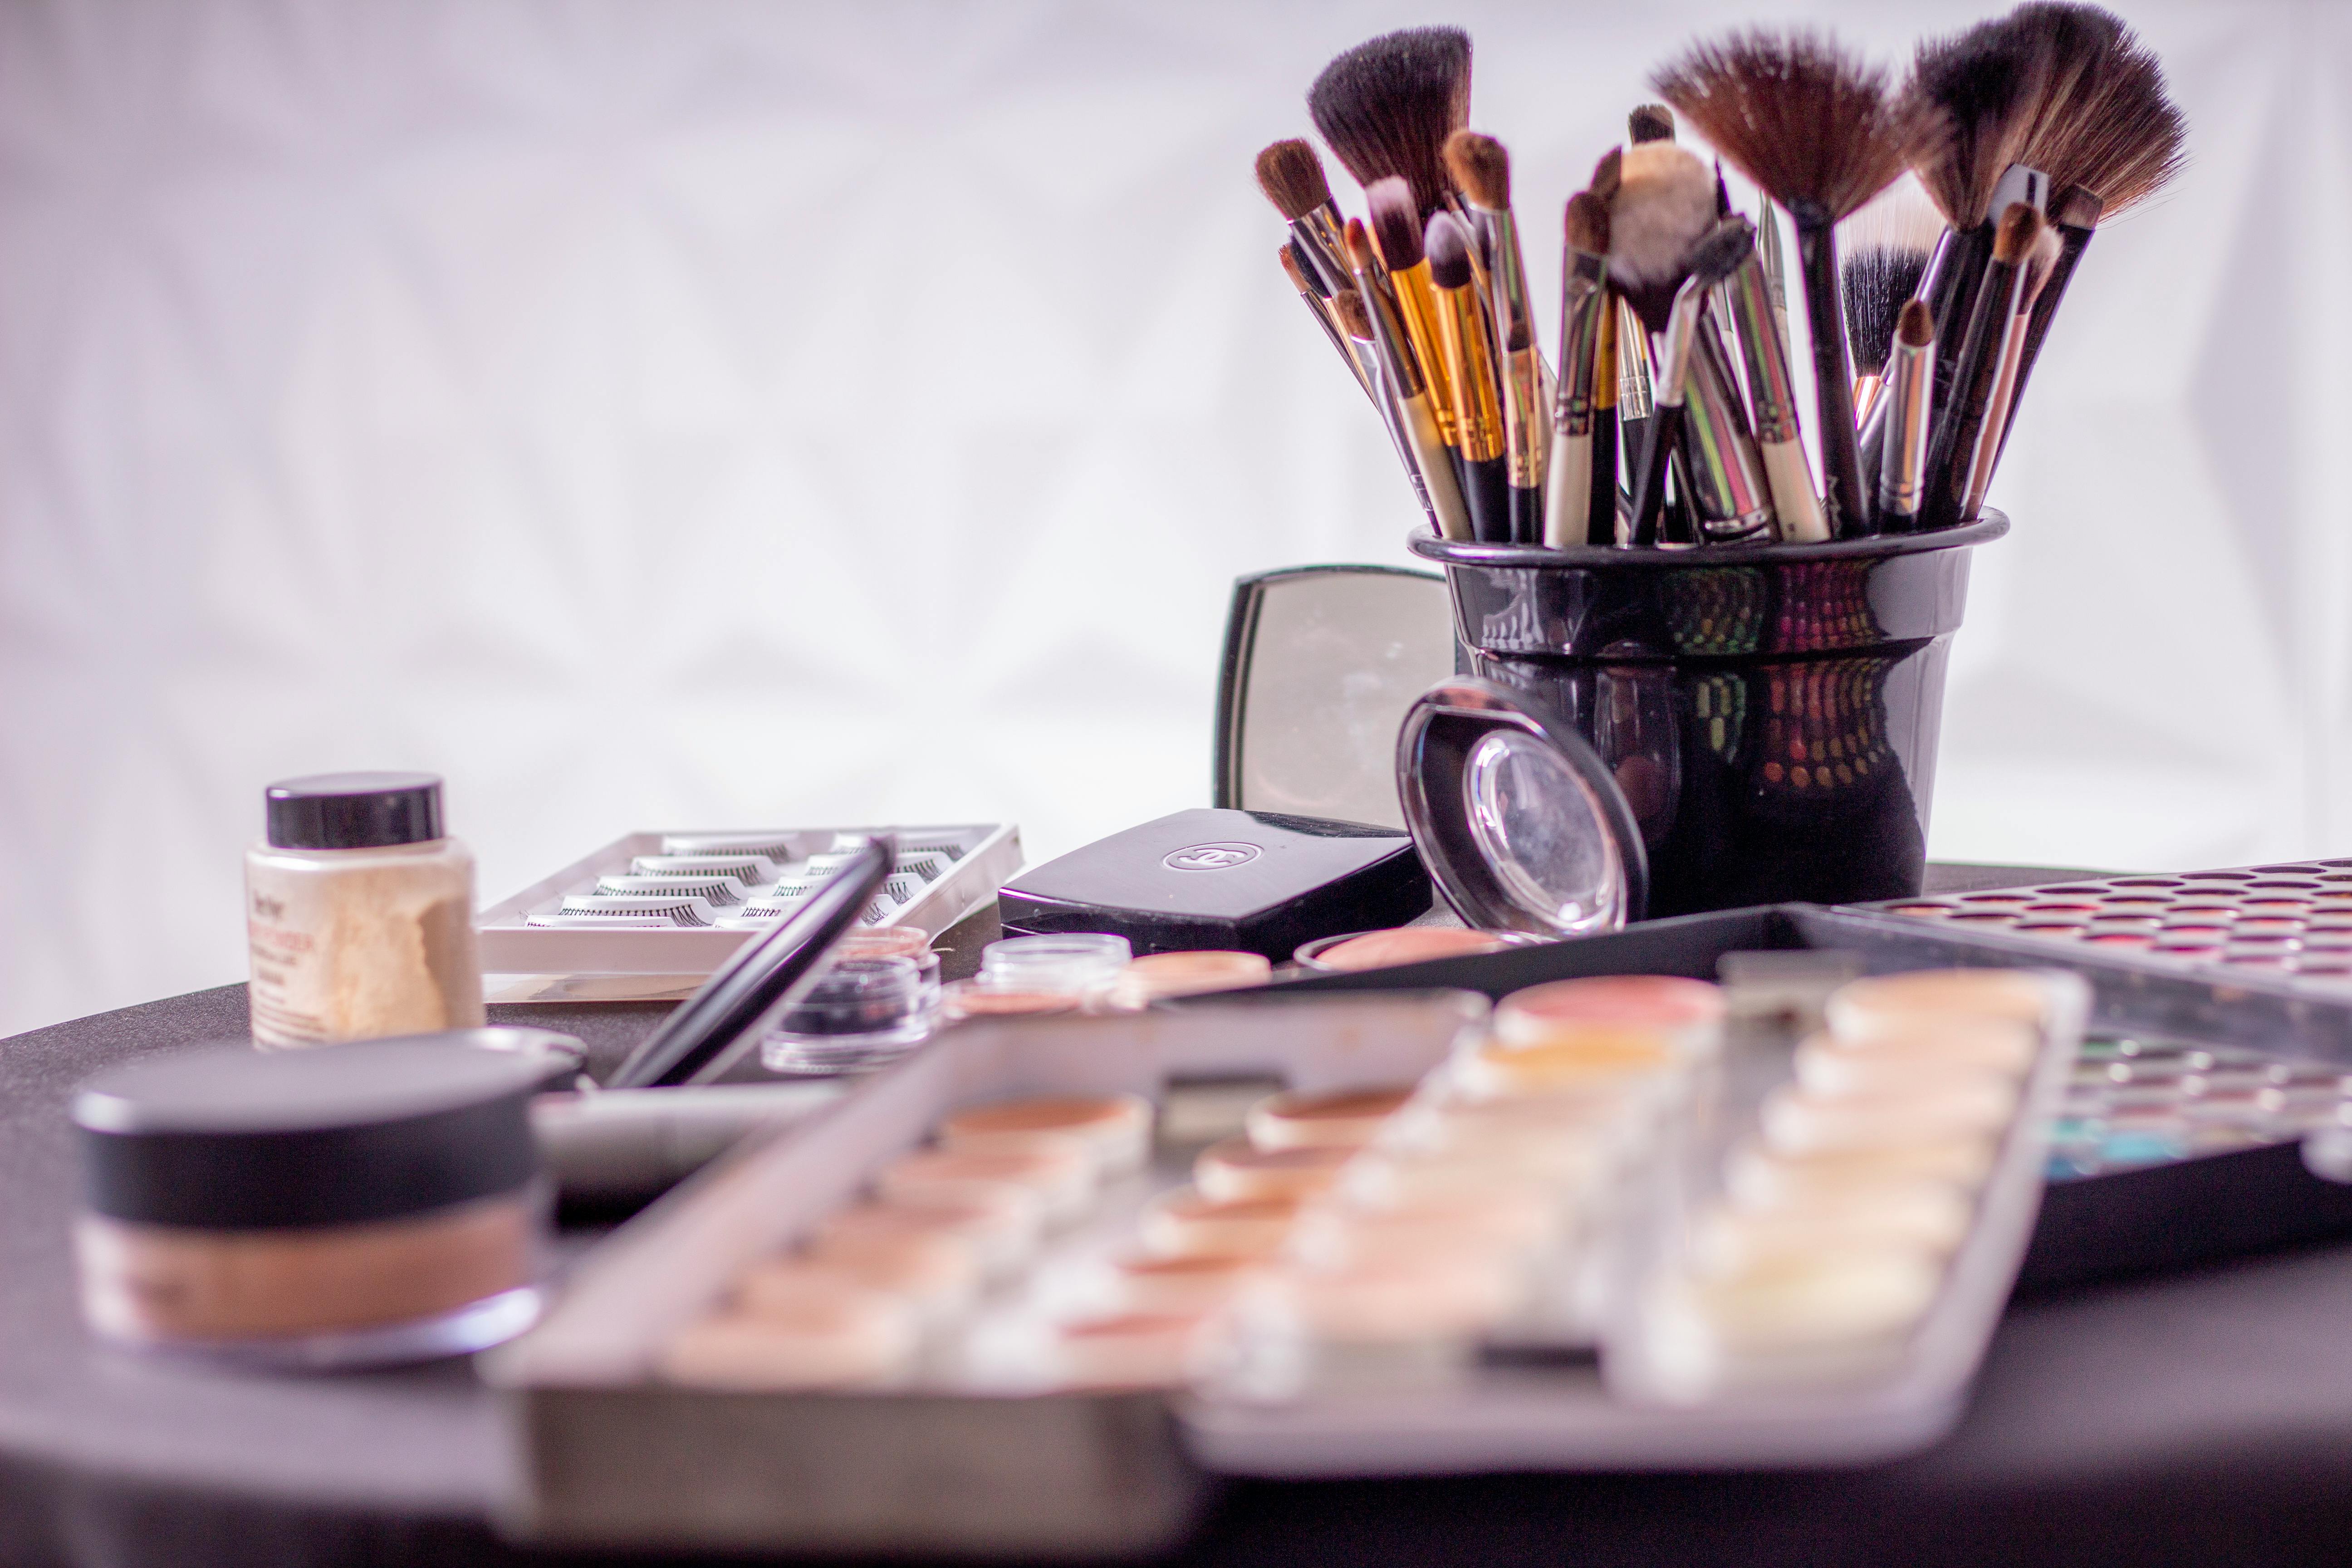 Makeup Photos, Download The BEST Free Makeup Stock Photos & HD Images